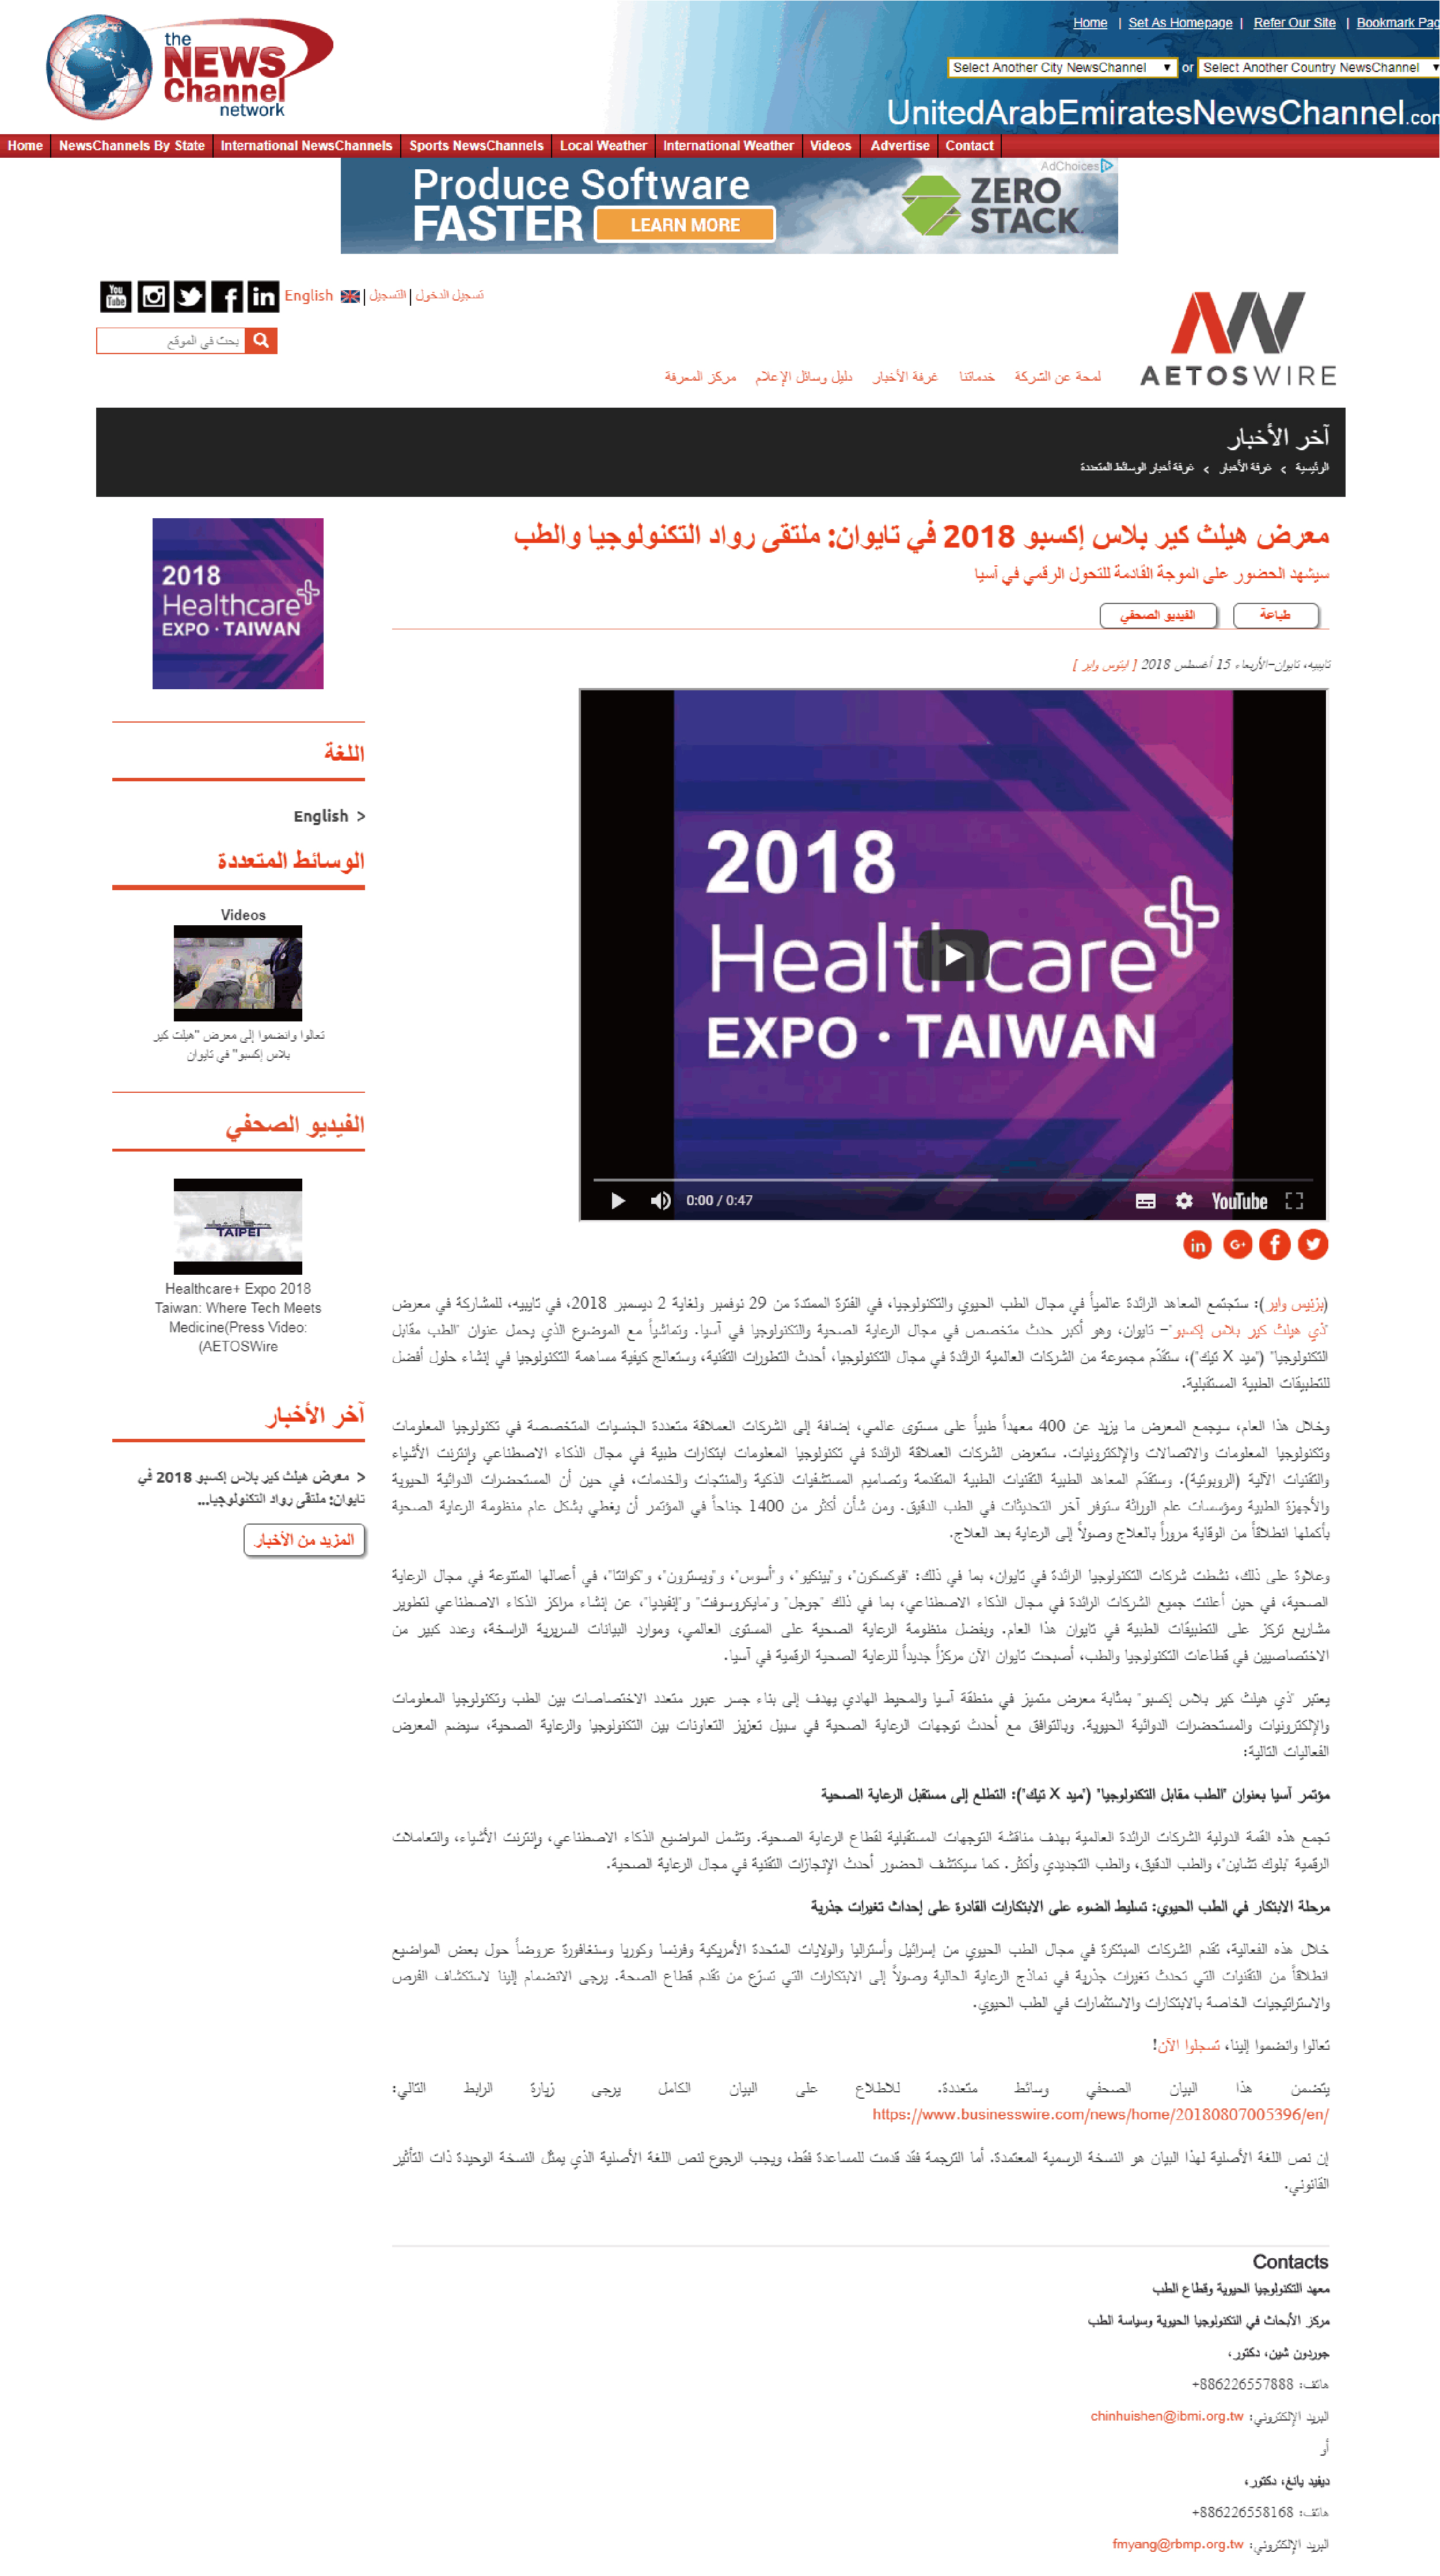 معرض هيلث كير بلاس إكسبو 2018 في تايوان: ملتقى رواد التكنولوجيا والطب